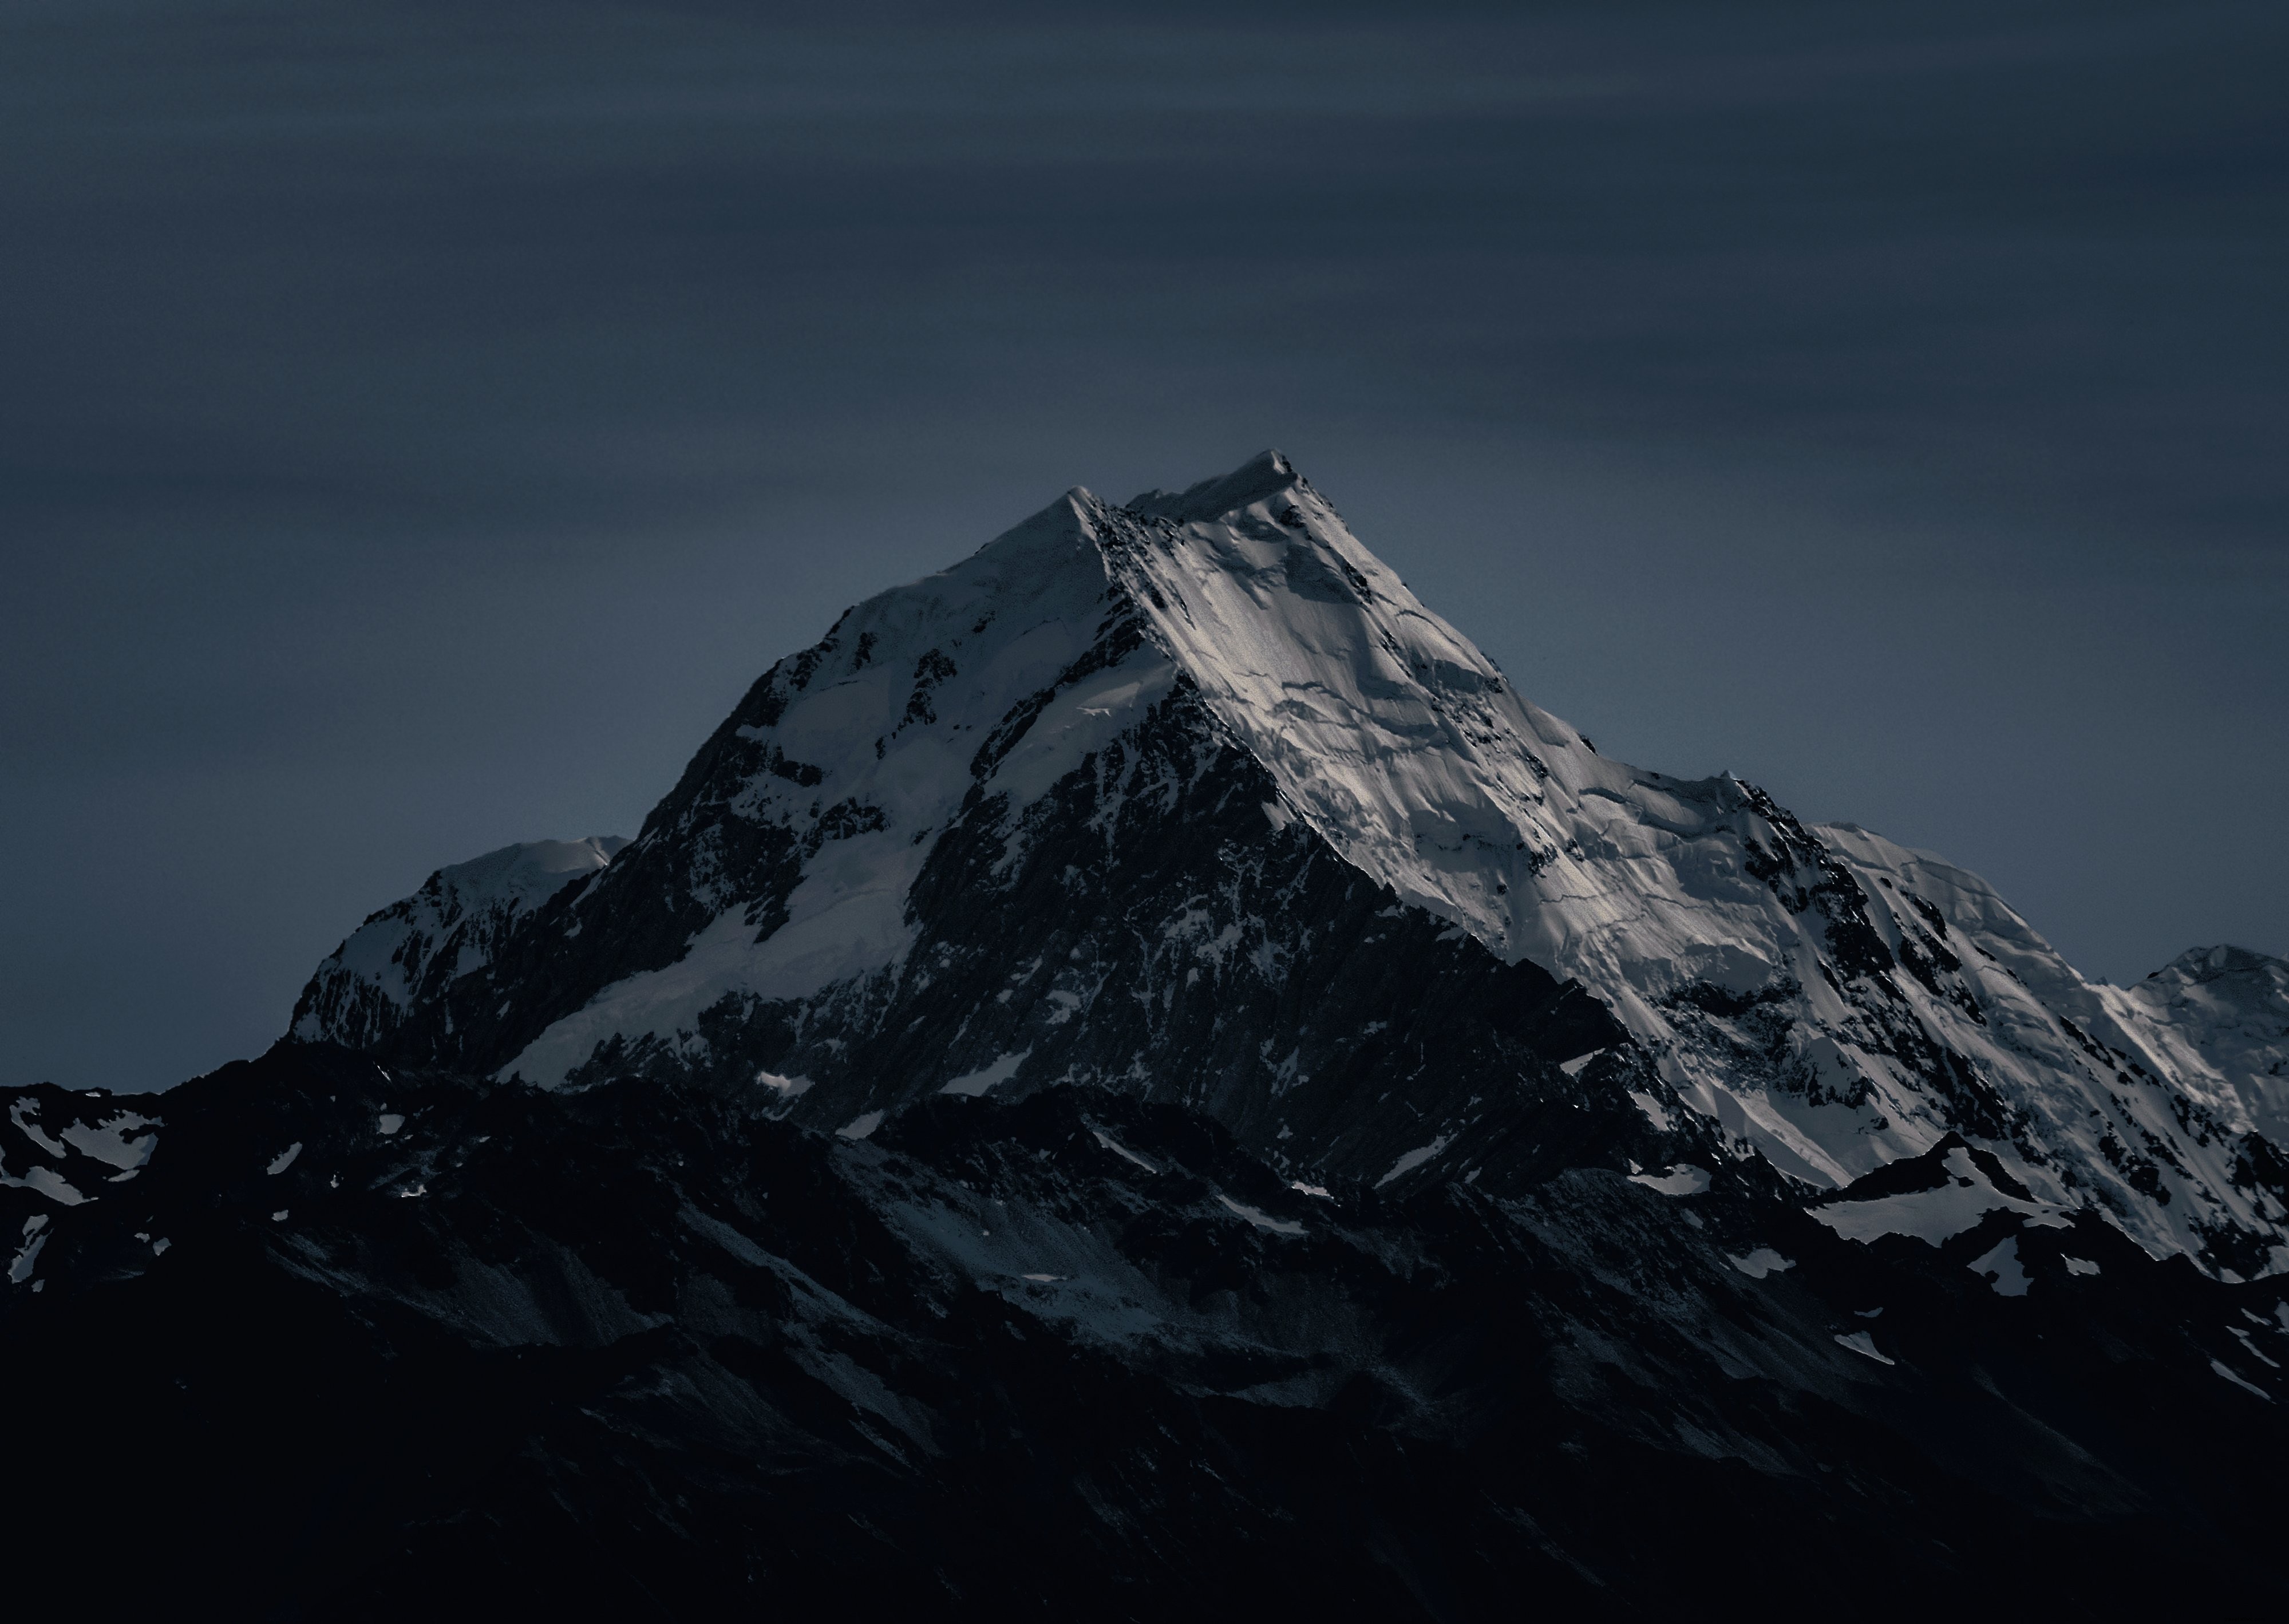 Foto de la cumbre helada de una montaña en una noche helada